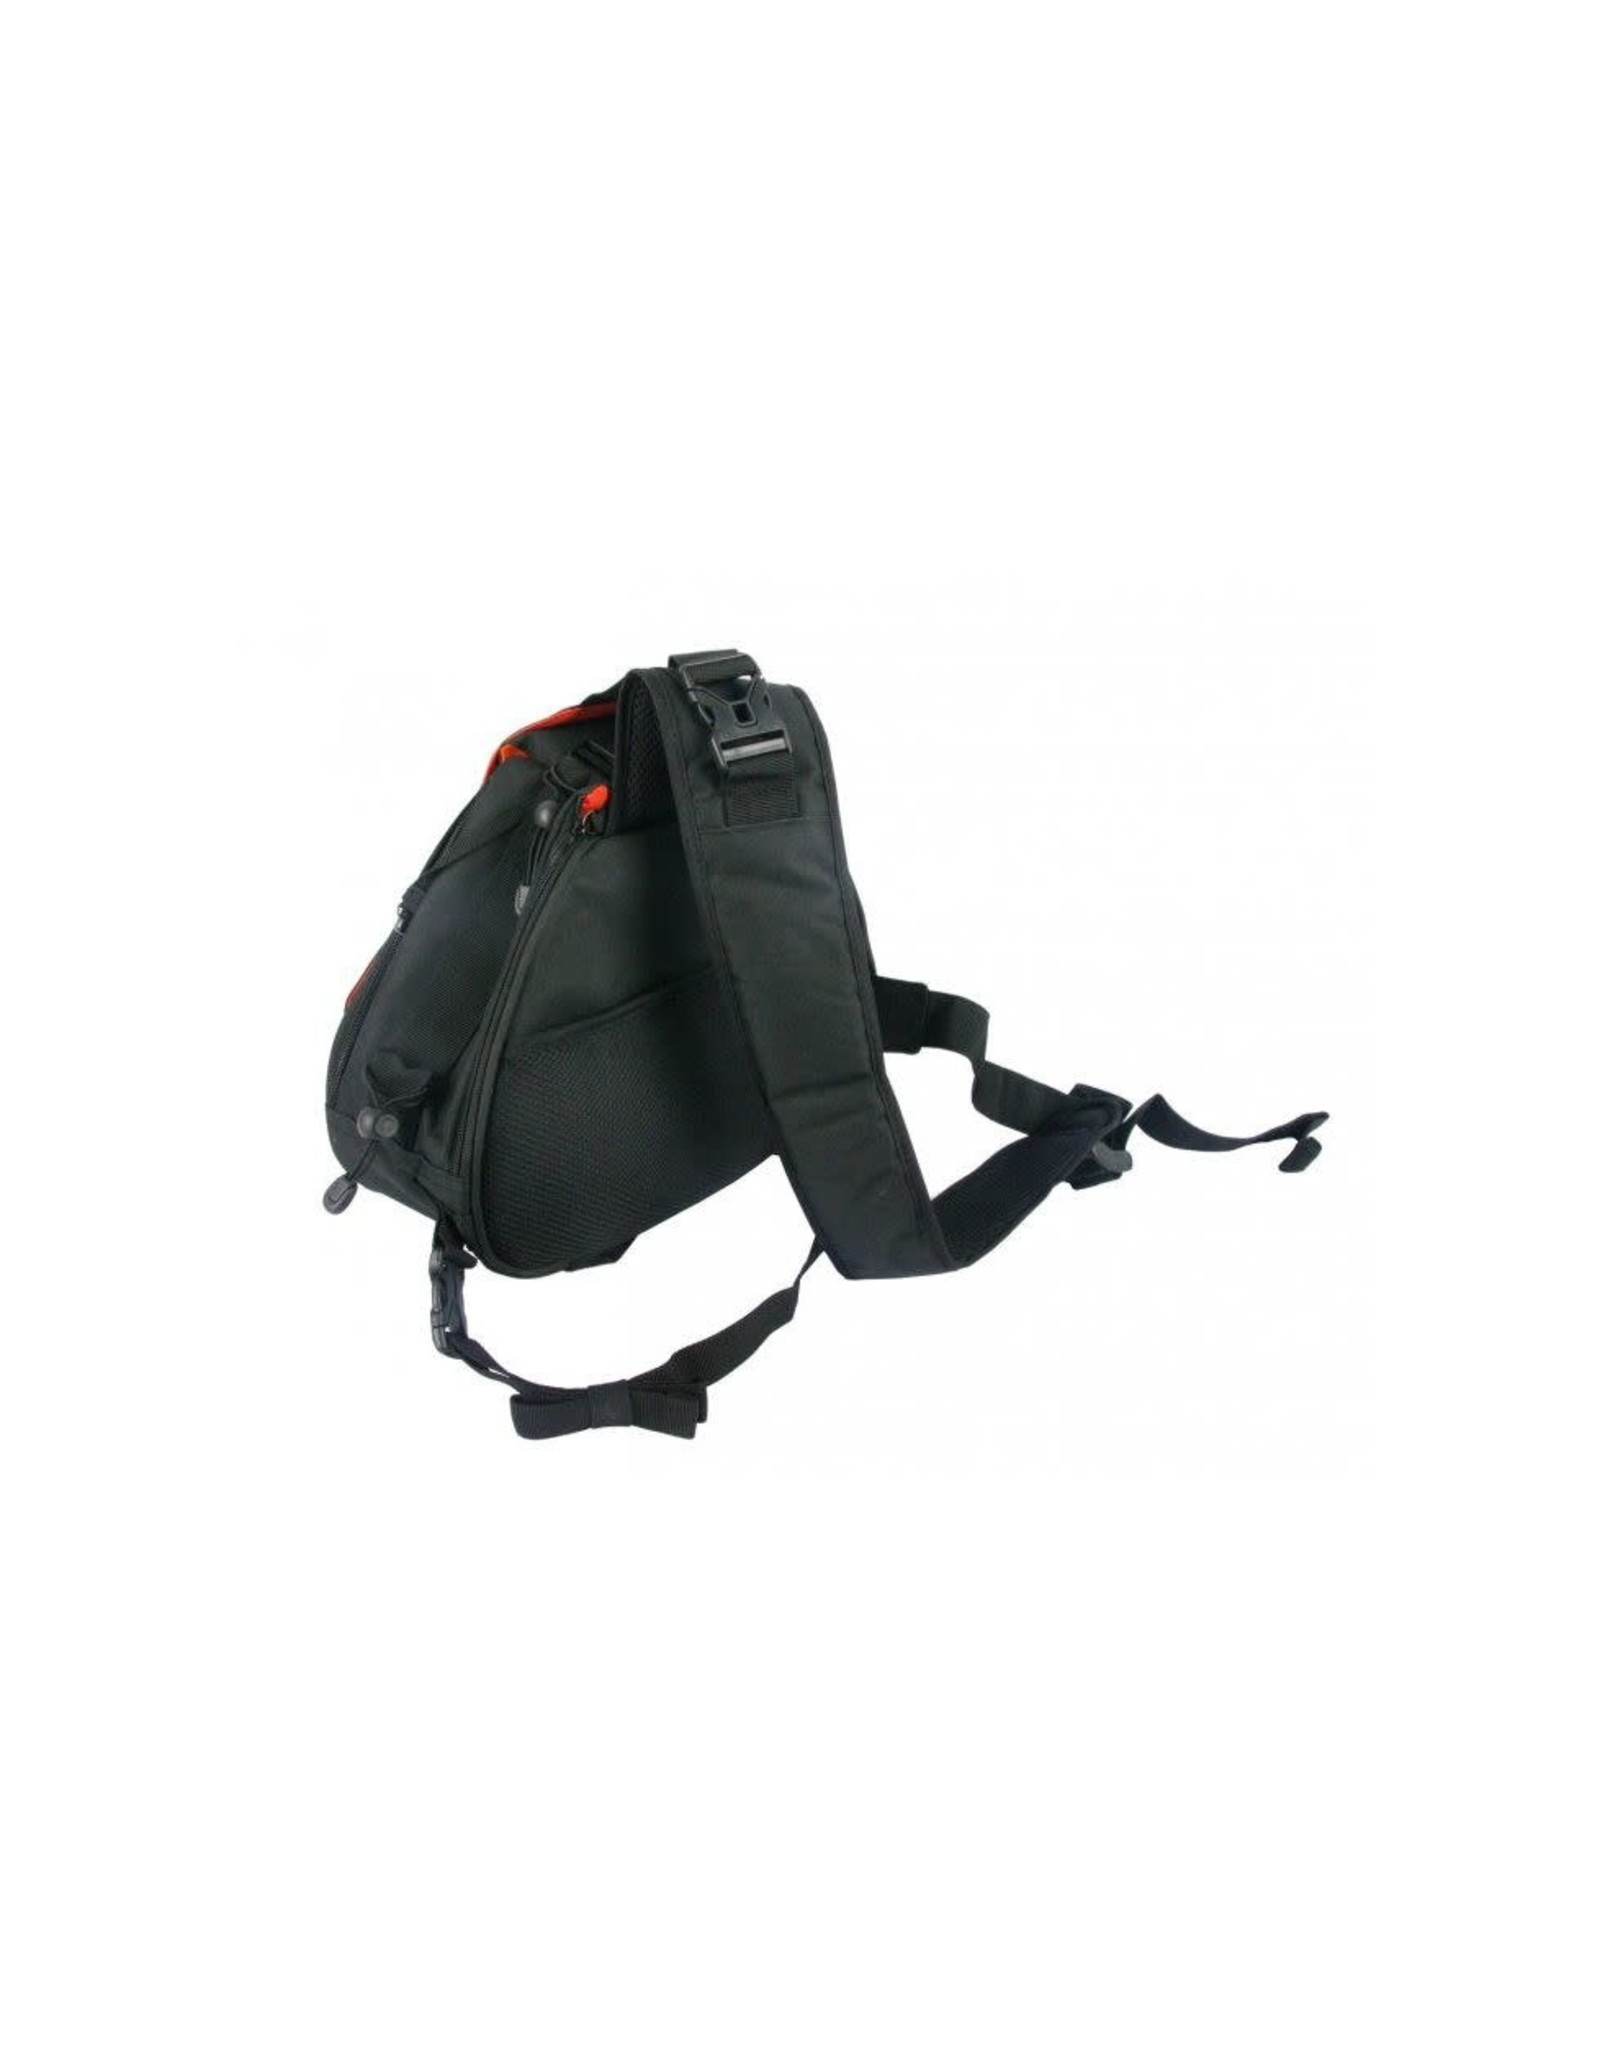 Easy Black Cross Body Camera Bag #Z-EC8205